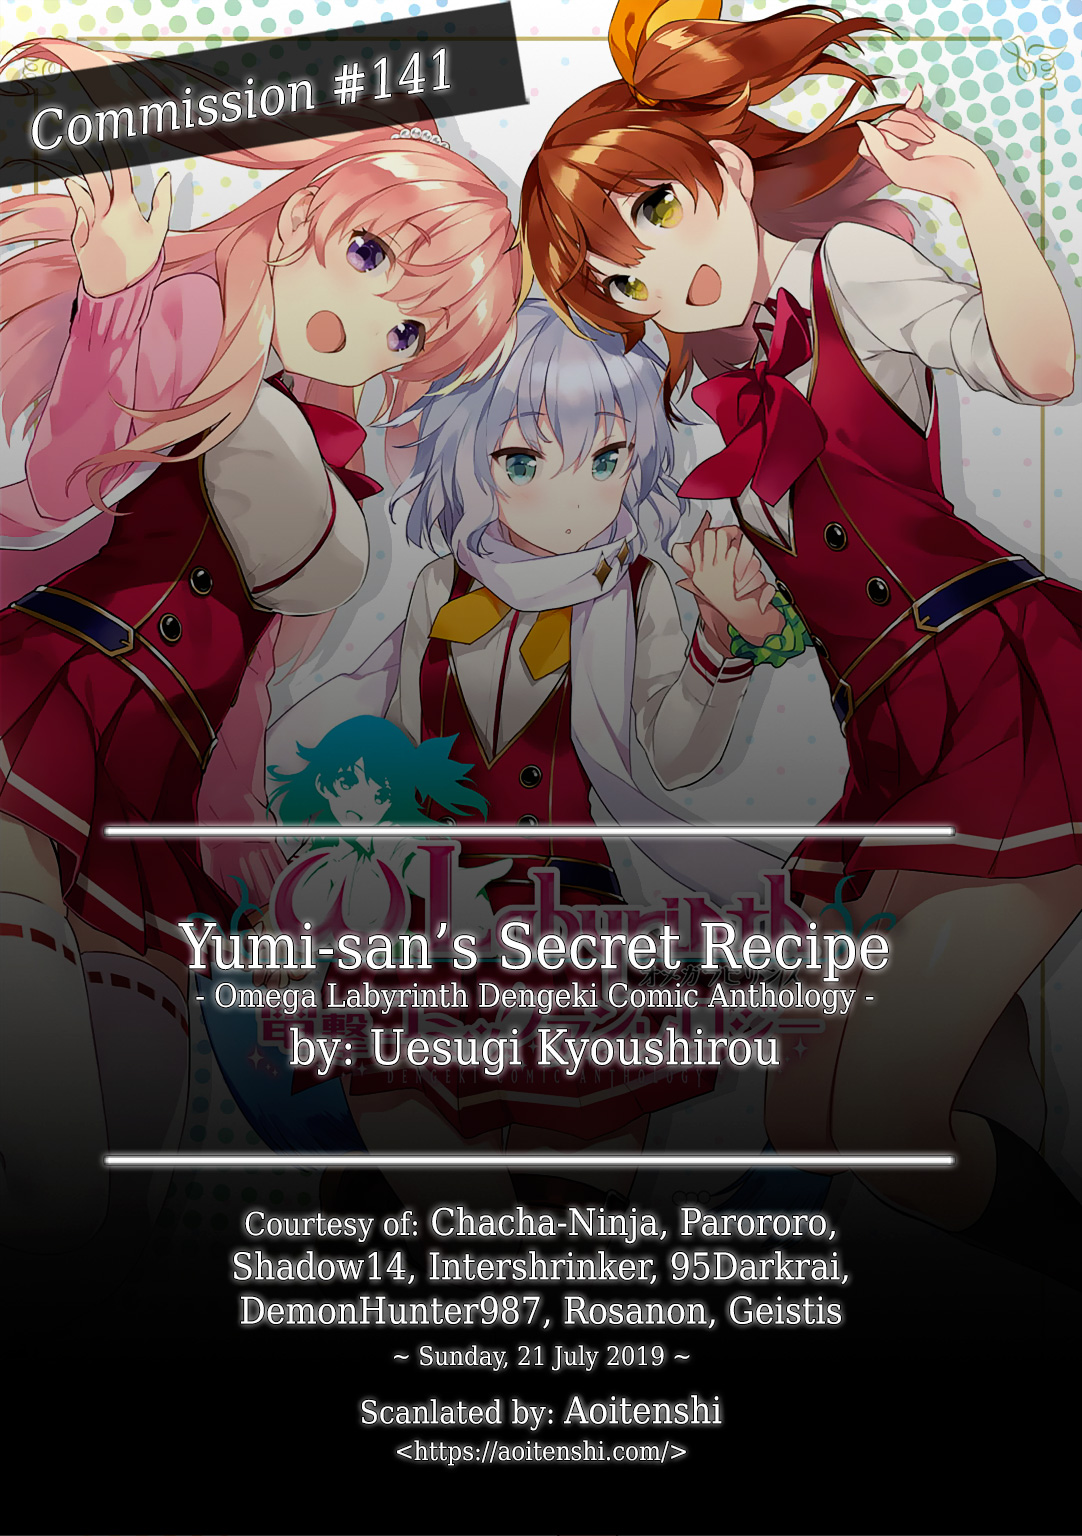 ω Labyrinth Dengeki Comic Anthology Vol. 1 Ch. 12 Yumi san’s Secret Recipe (Uesugi Kyoushirou)